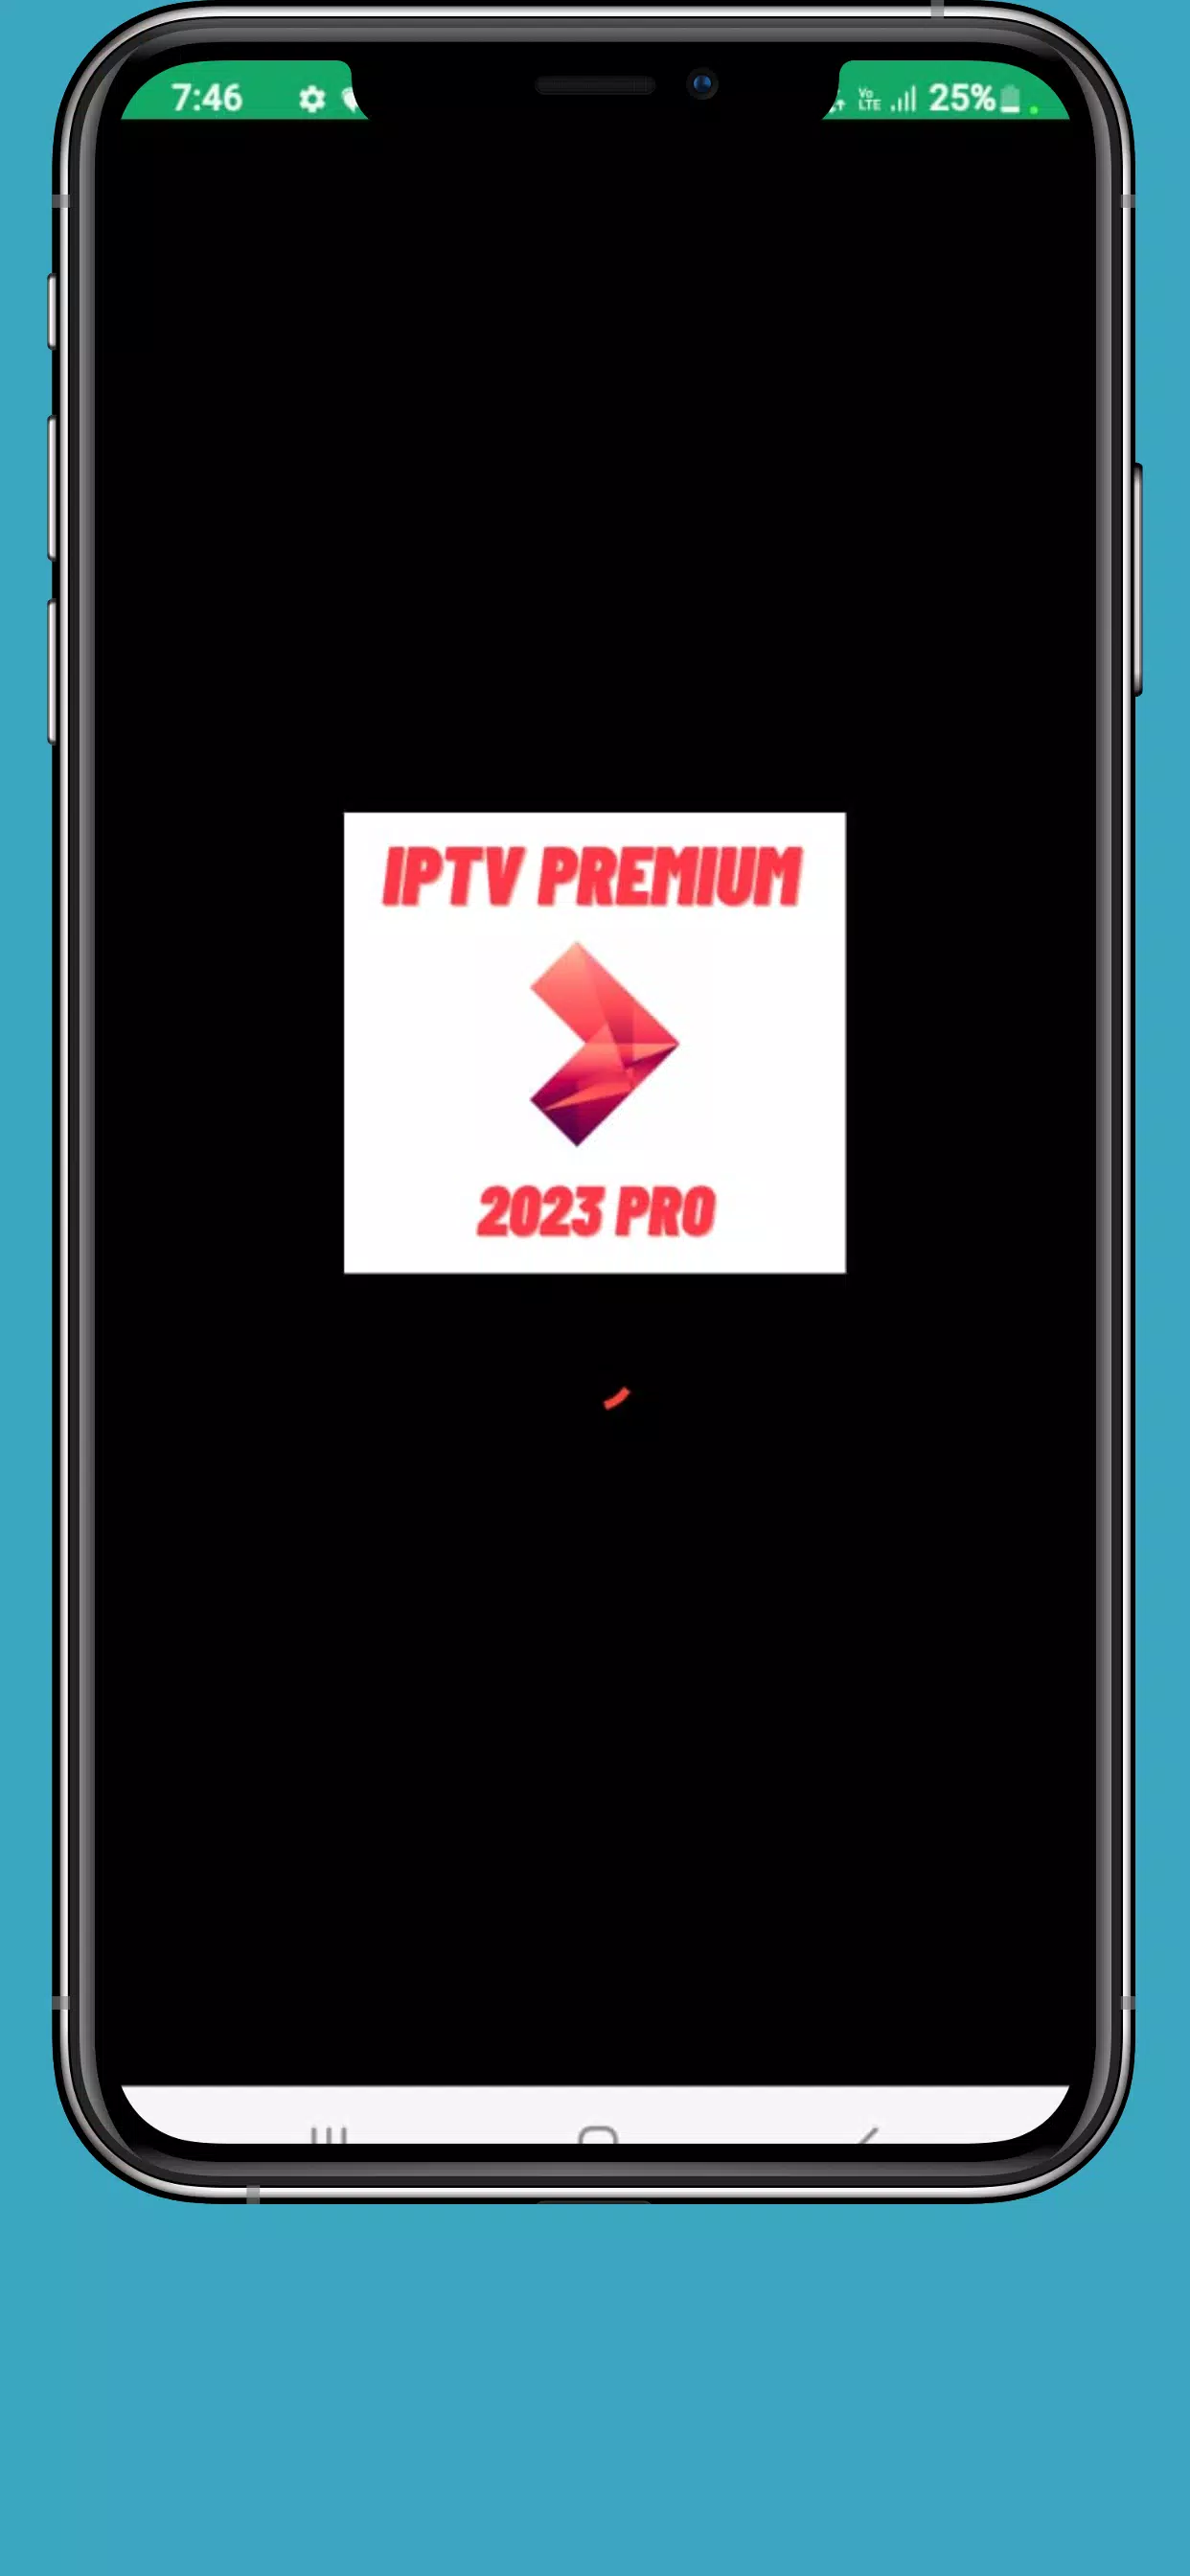 Premium APK Download Latest (2023)